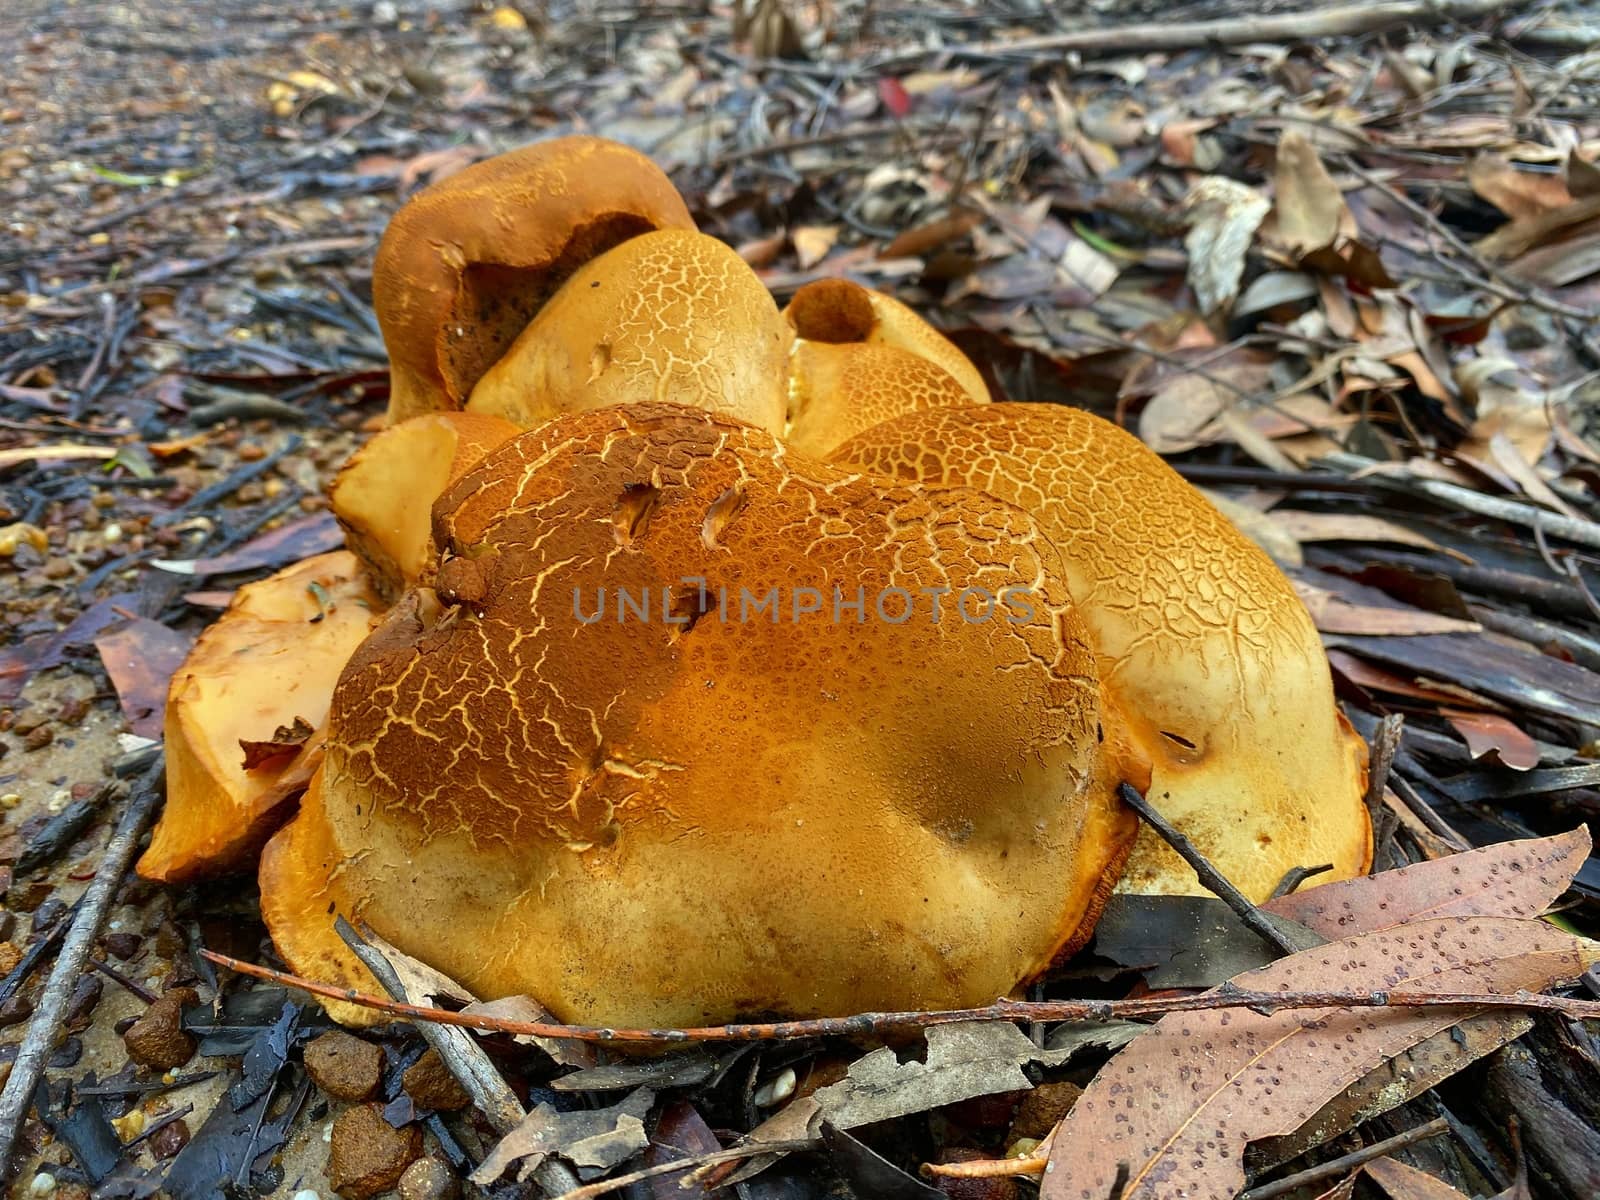 Cluster of orange mushrooms